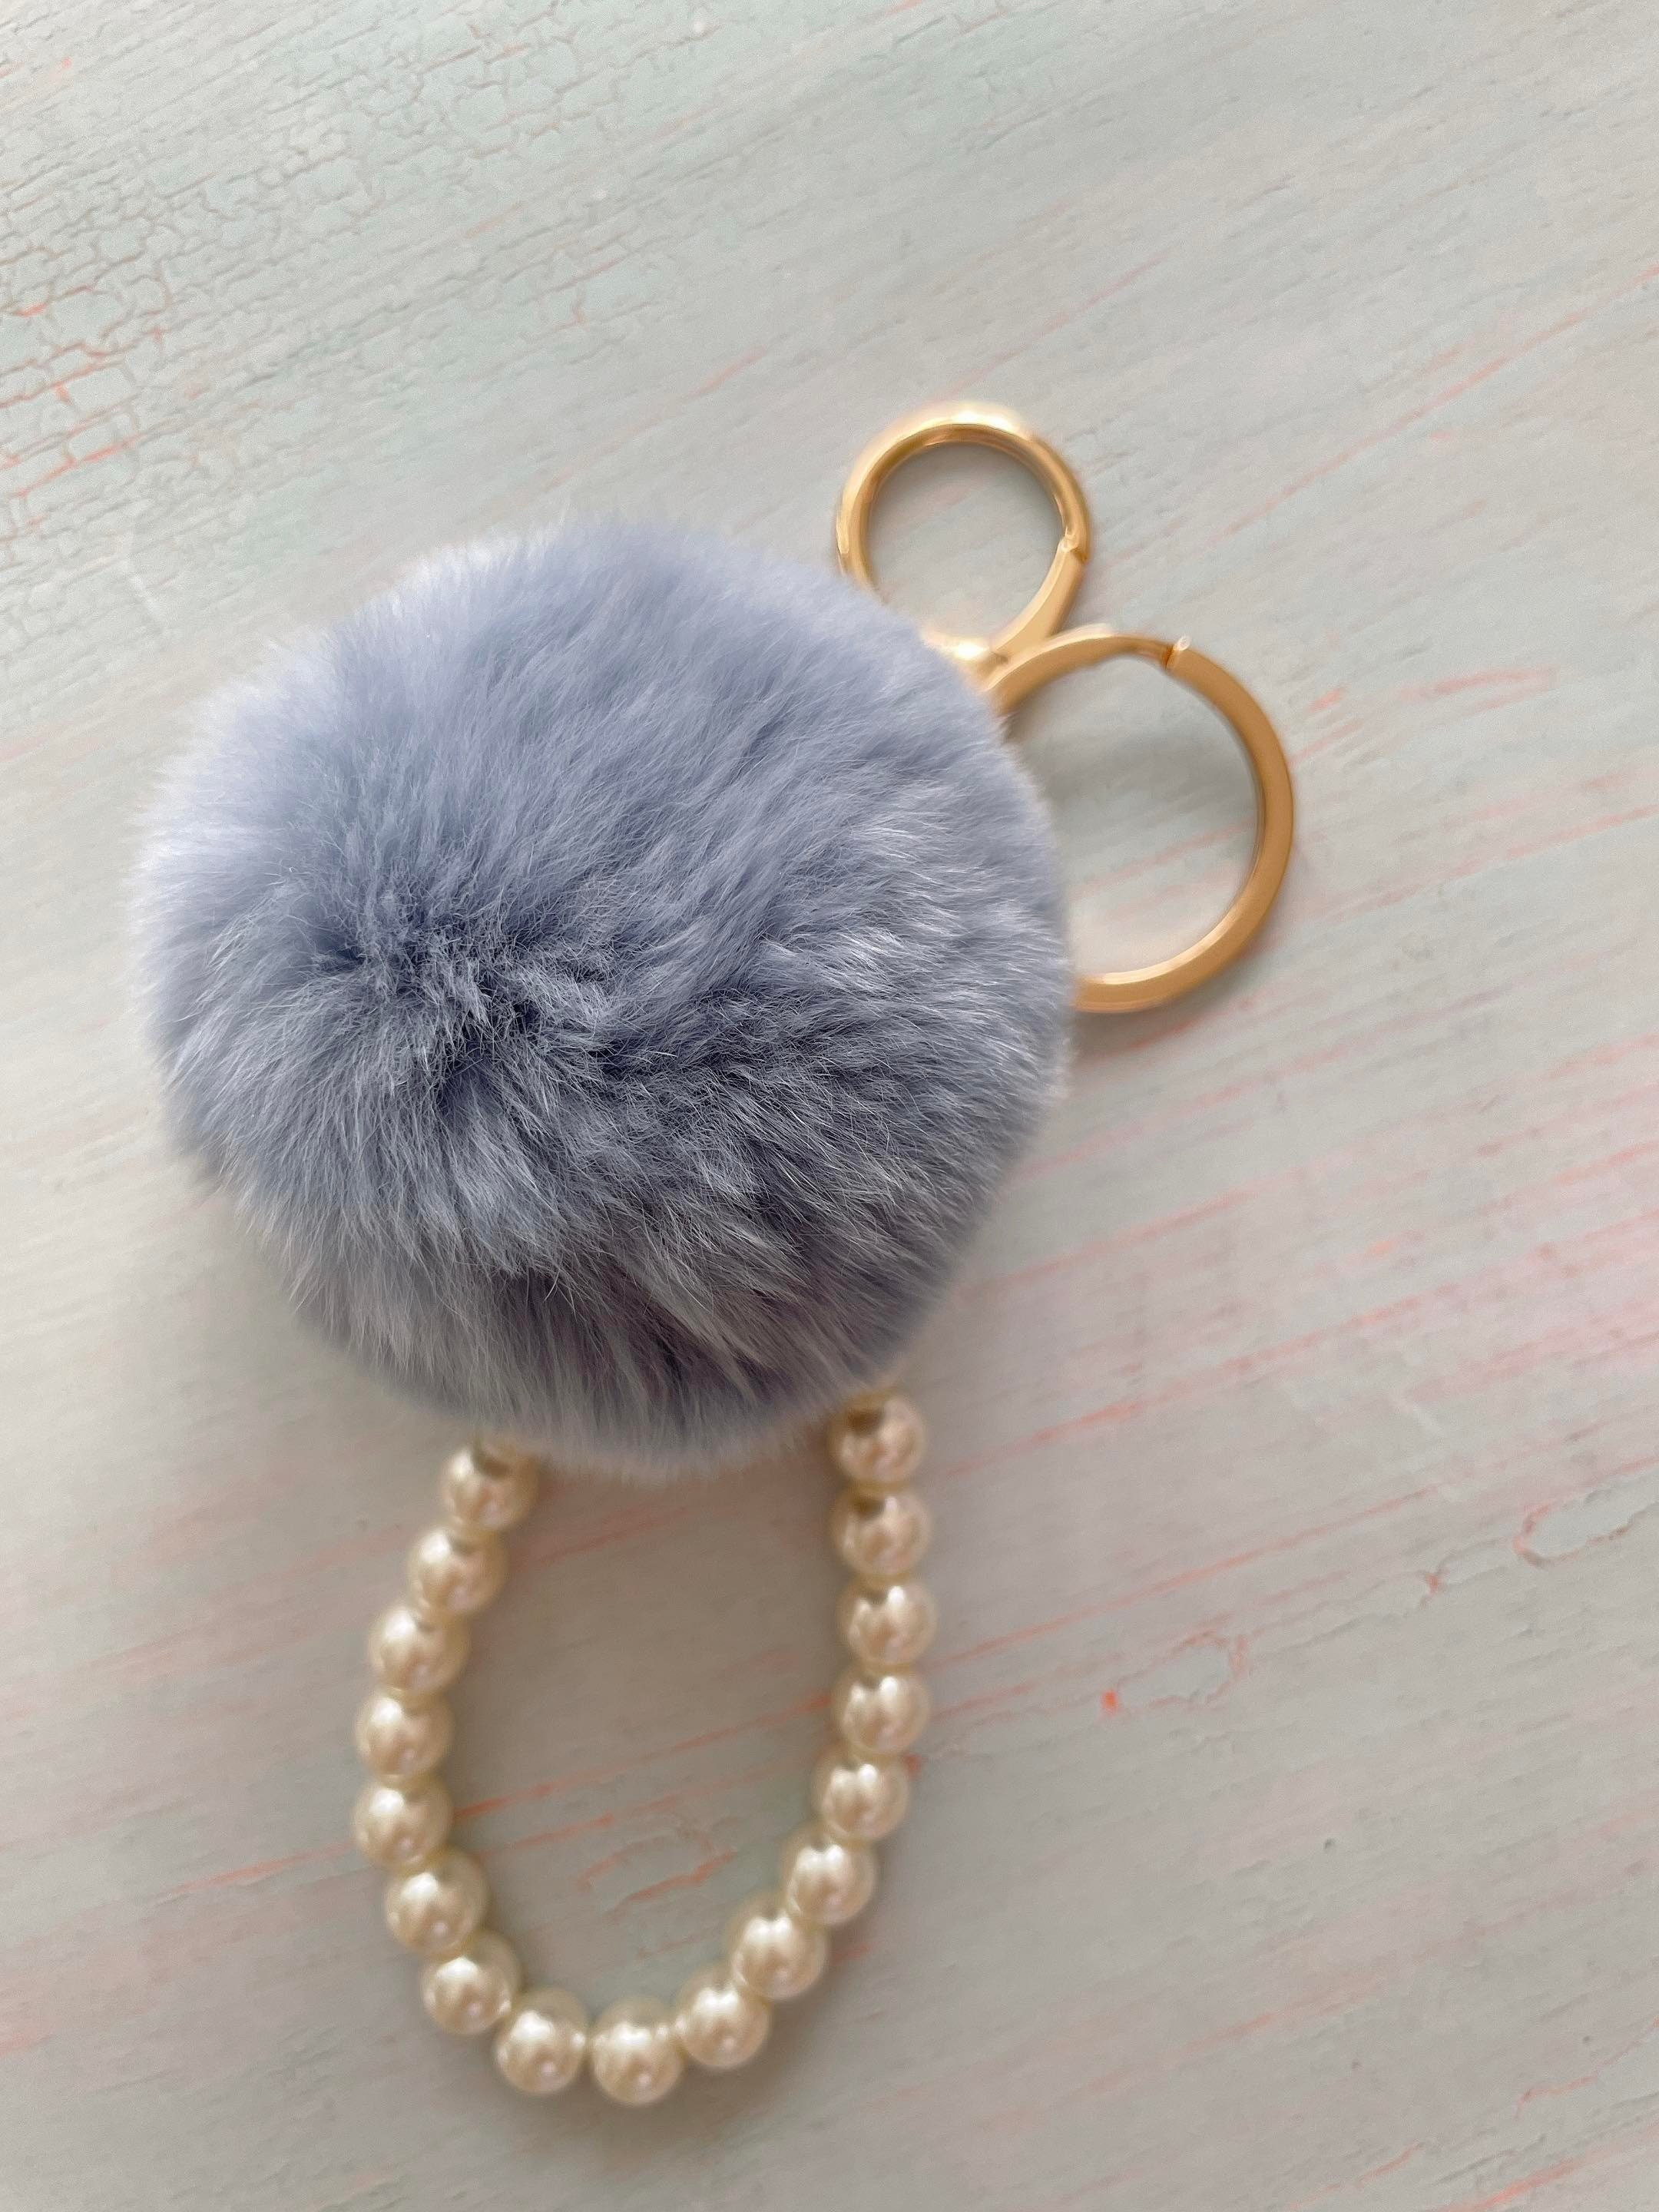 Fashion Pearl Chain Crystal Bow Pompom Keychain Car Women handbag Key Chain  Ring Fluffy Puff Ball Keychains Jewelry